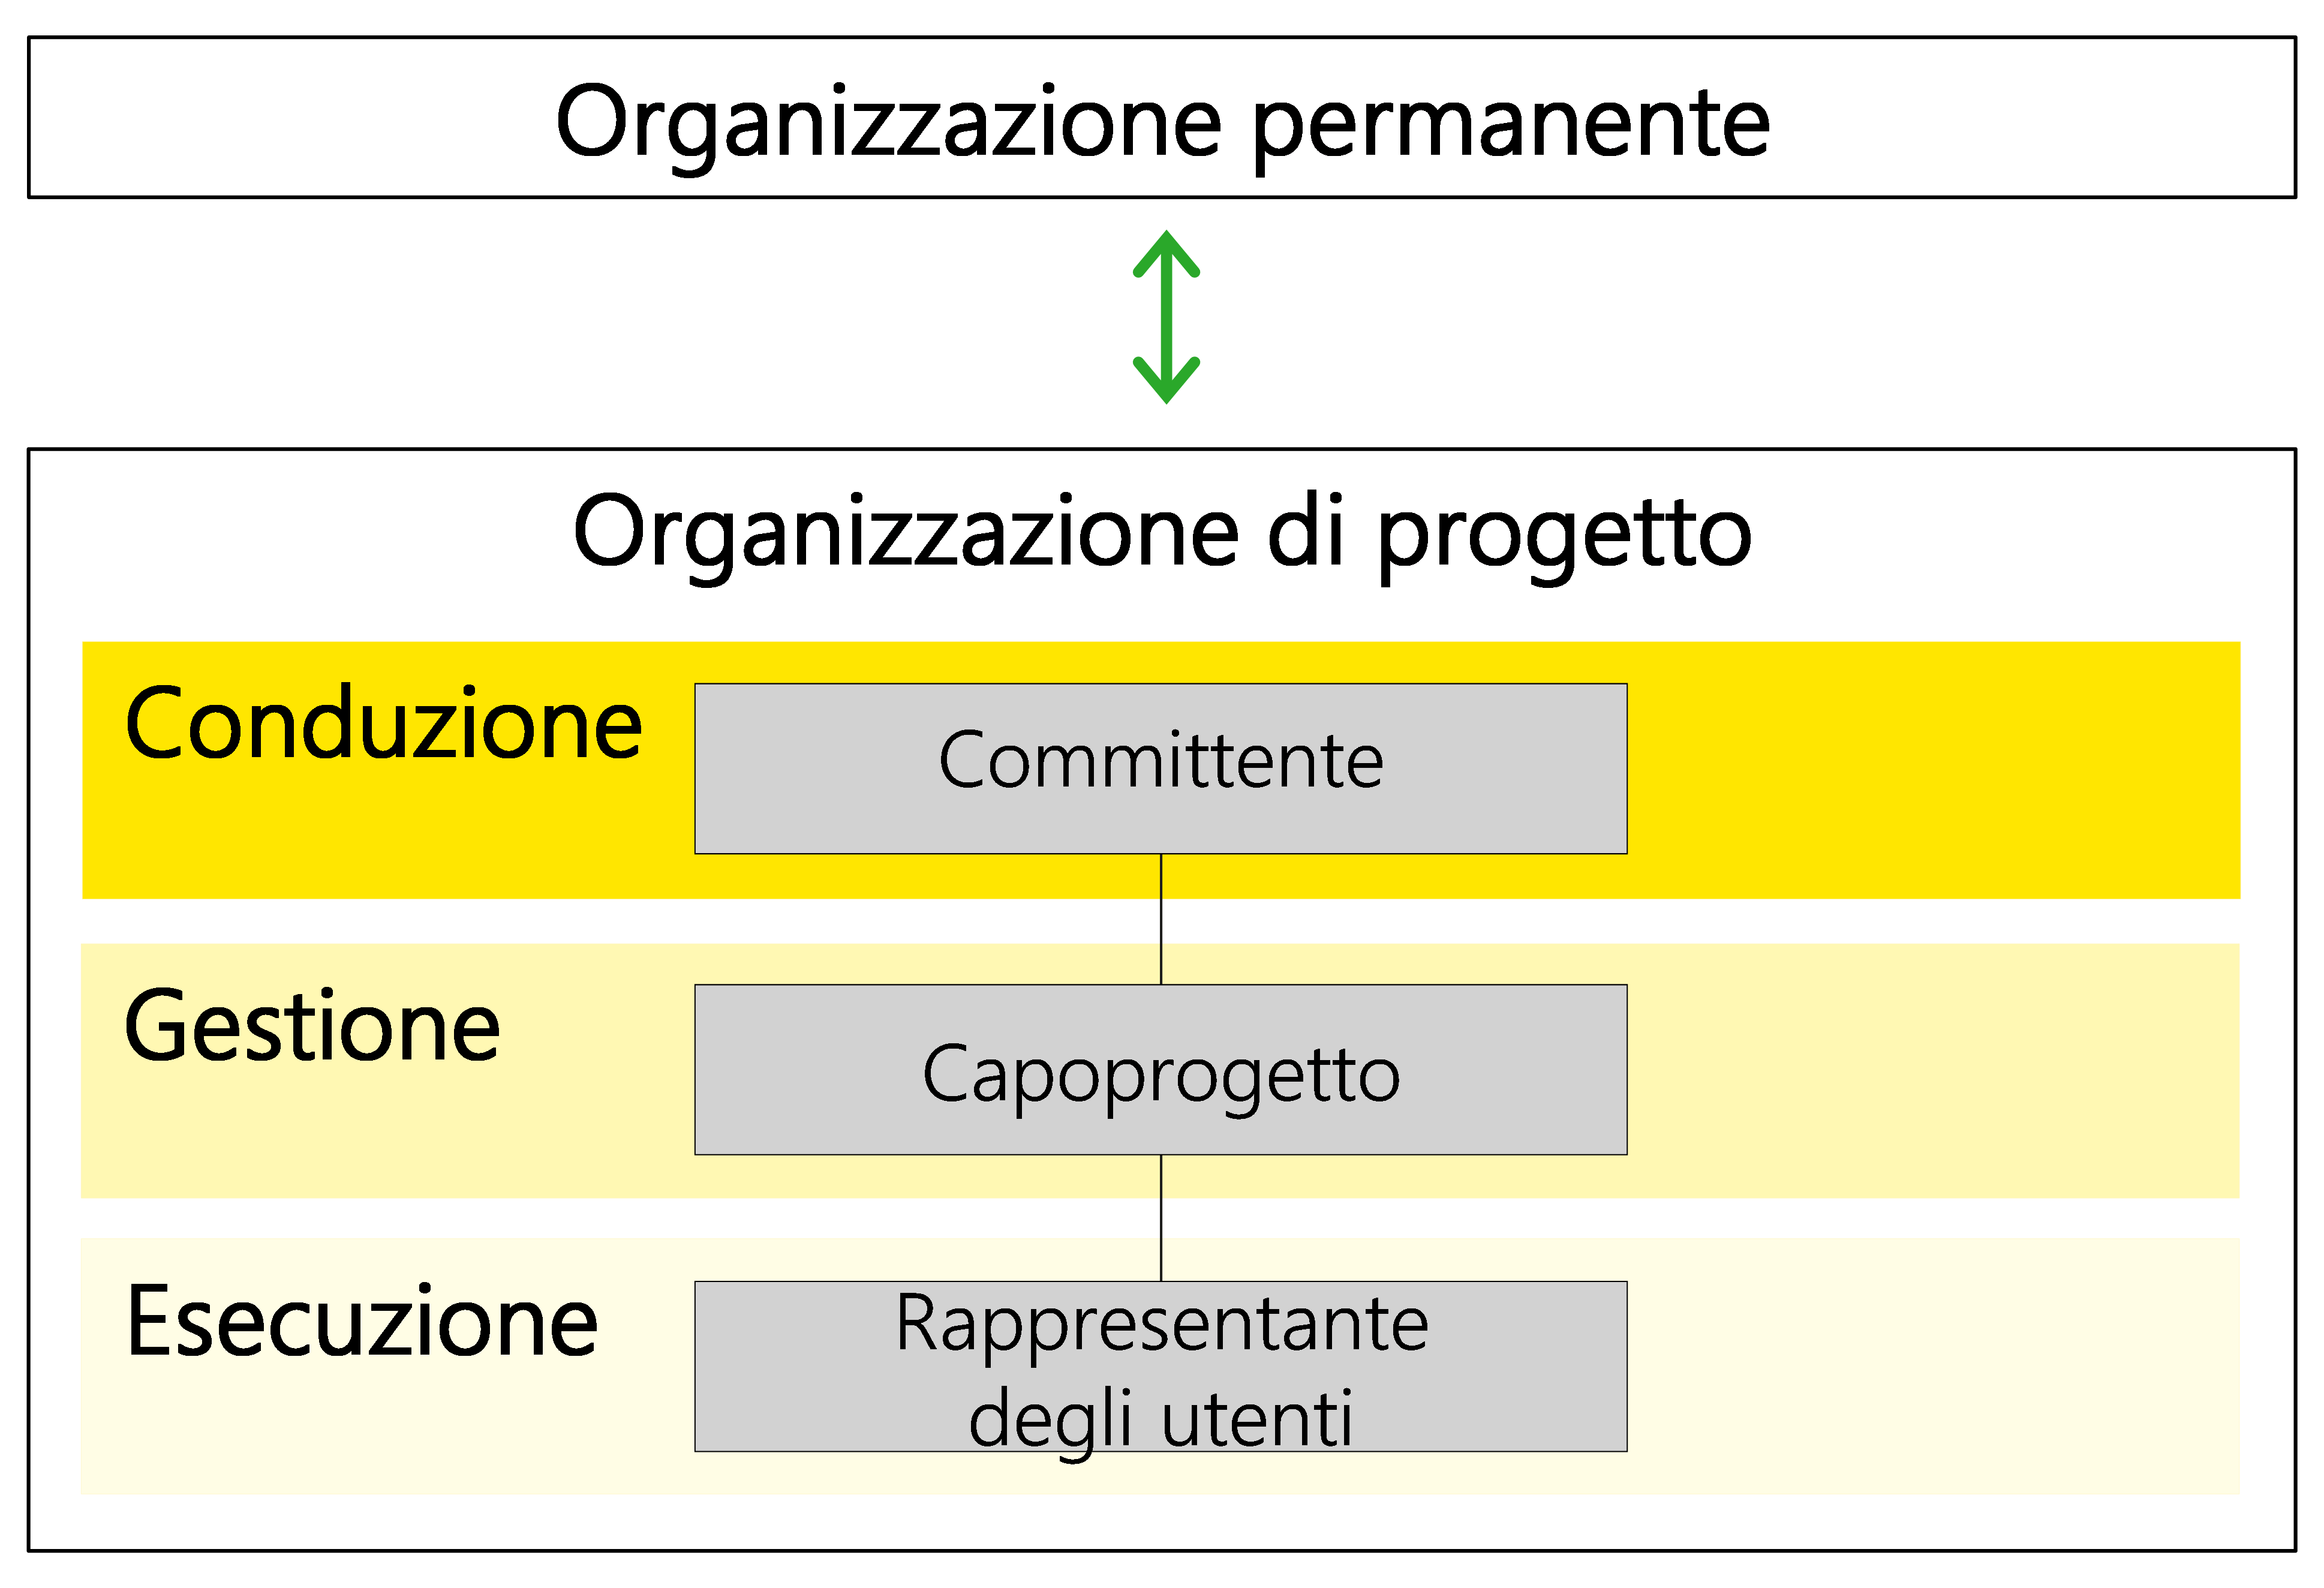 Figura 10: ruoli essenziali in un progetto (committente, capoprogetto e rappresentante degli utenti)